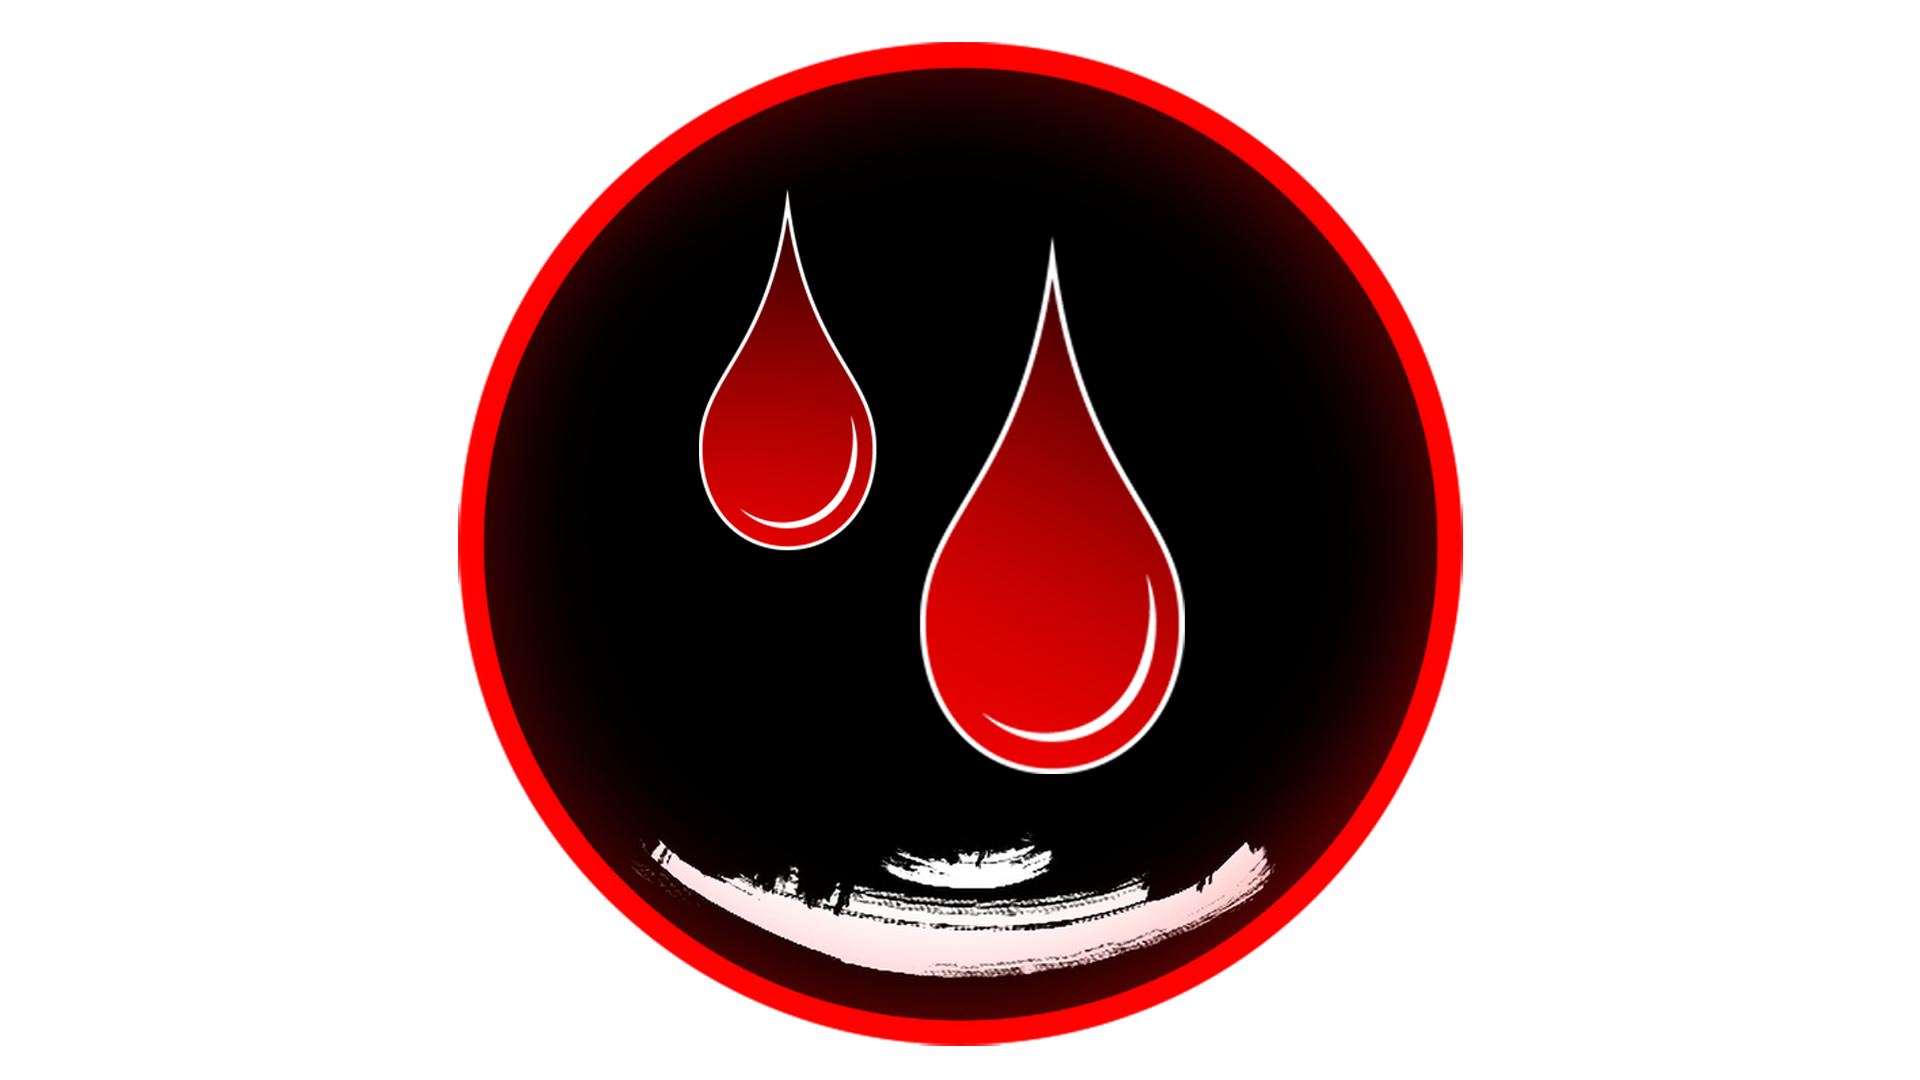 Icon for Blood Sacrifice